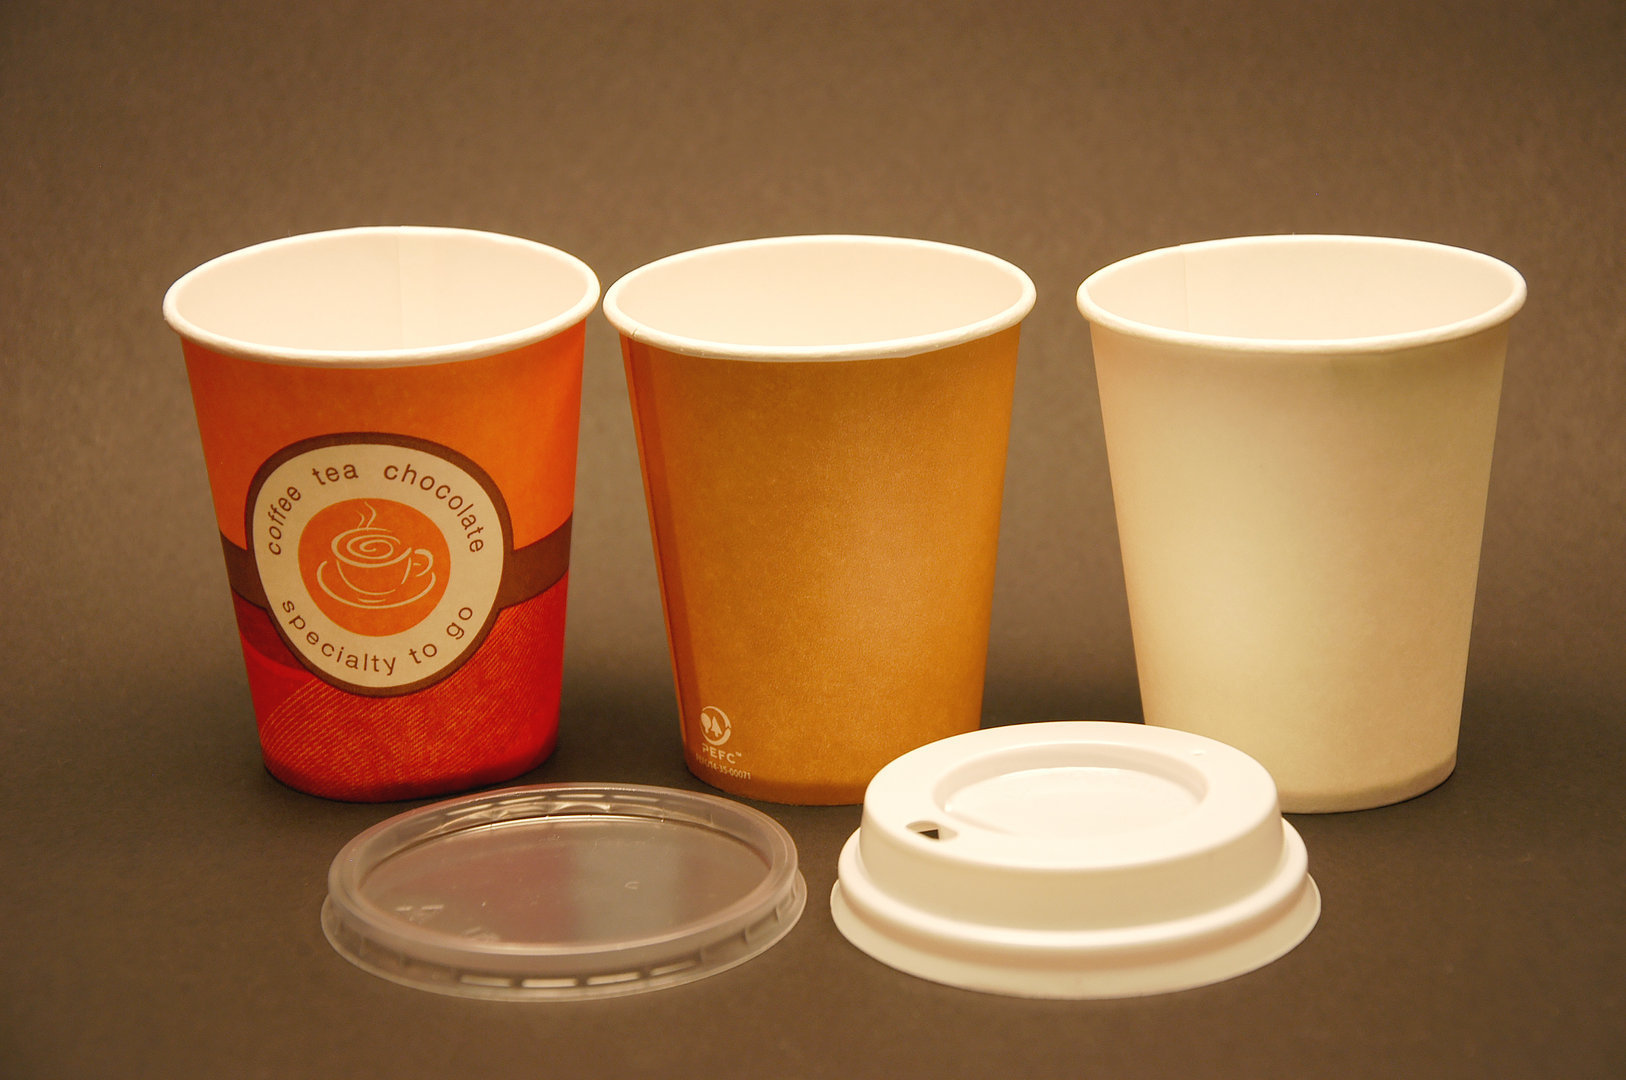 Leche té 7 oz TELEVASO infusiones Ideal para Bebidas Calientes como café Capacidad de 200 ml - Desechables y reciclables Vaso de cartón para café Vending 1000 uds 